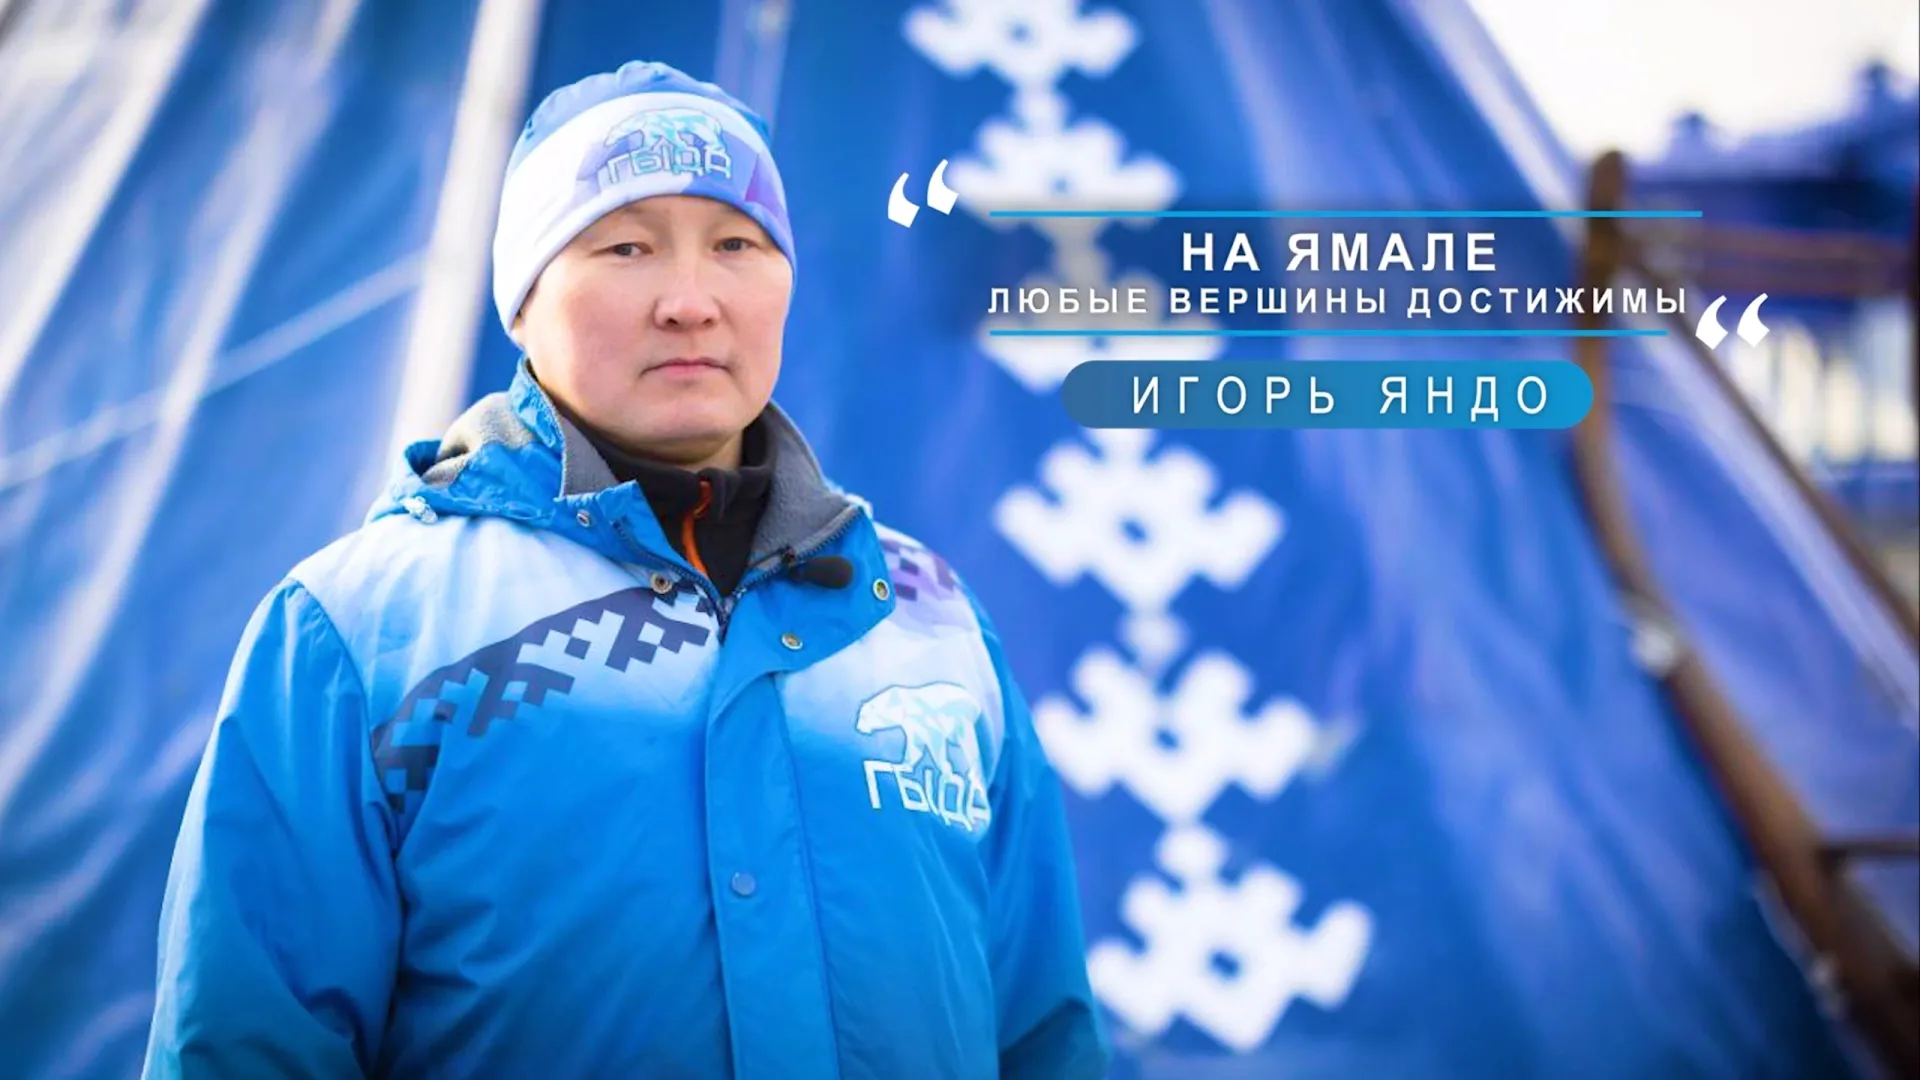 «Для меня Ямал — это место, где возможно все, где любые вершины достижимы». Фото: кадр из видео vk.com/arctic_narod